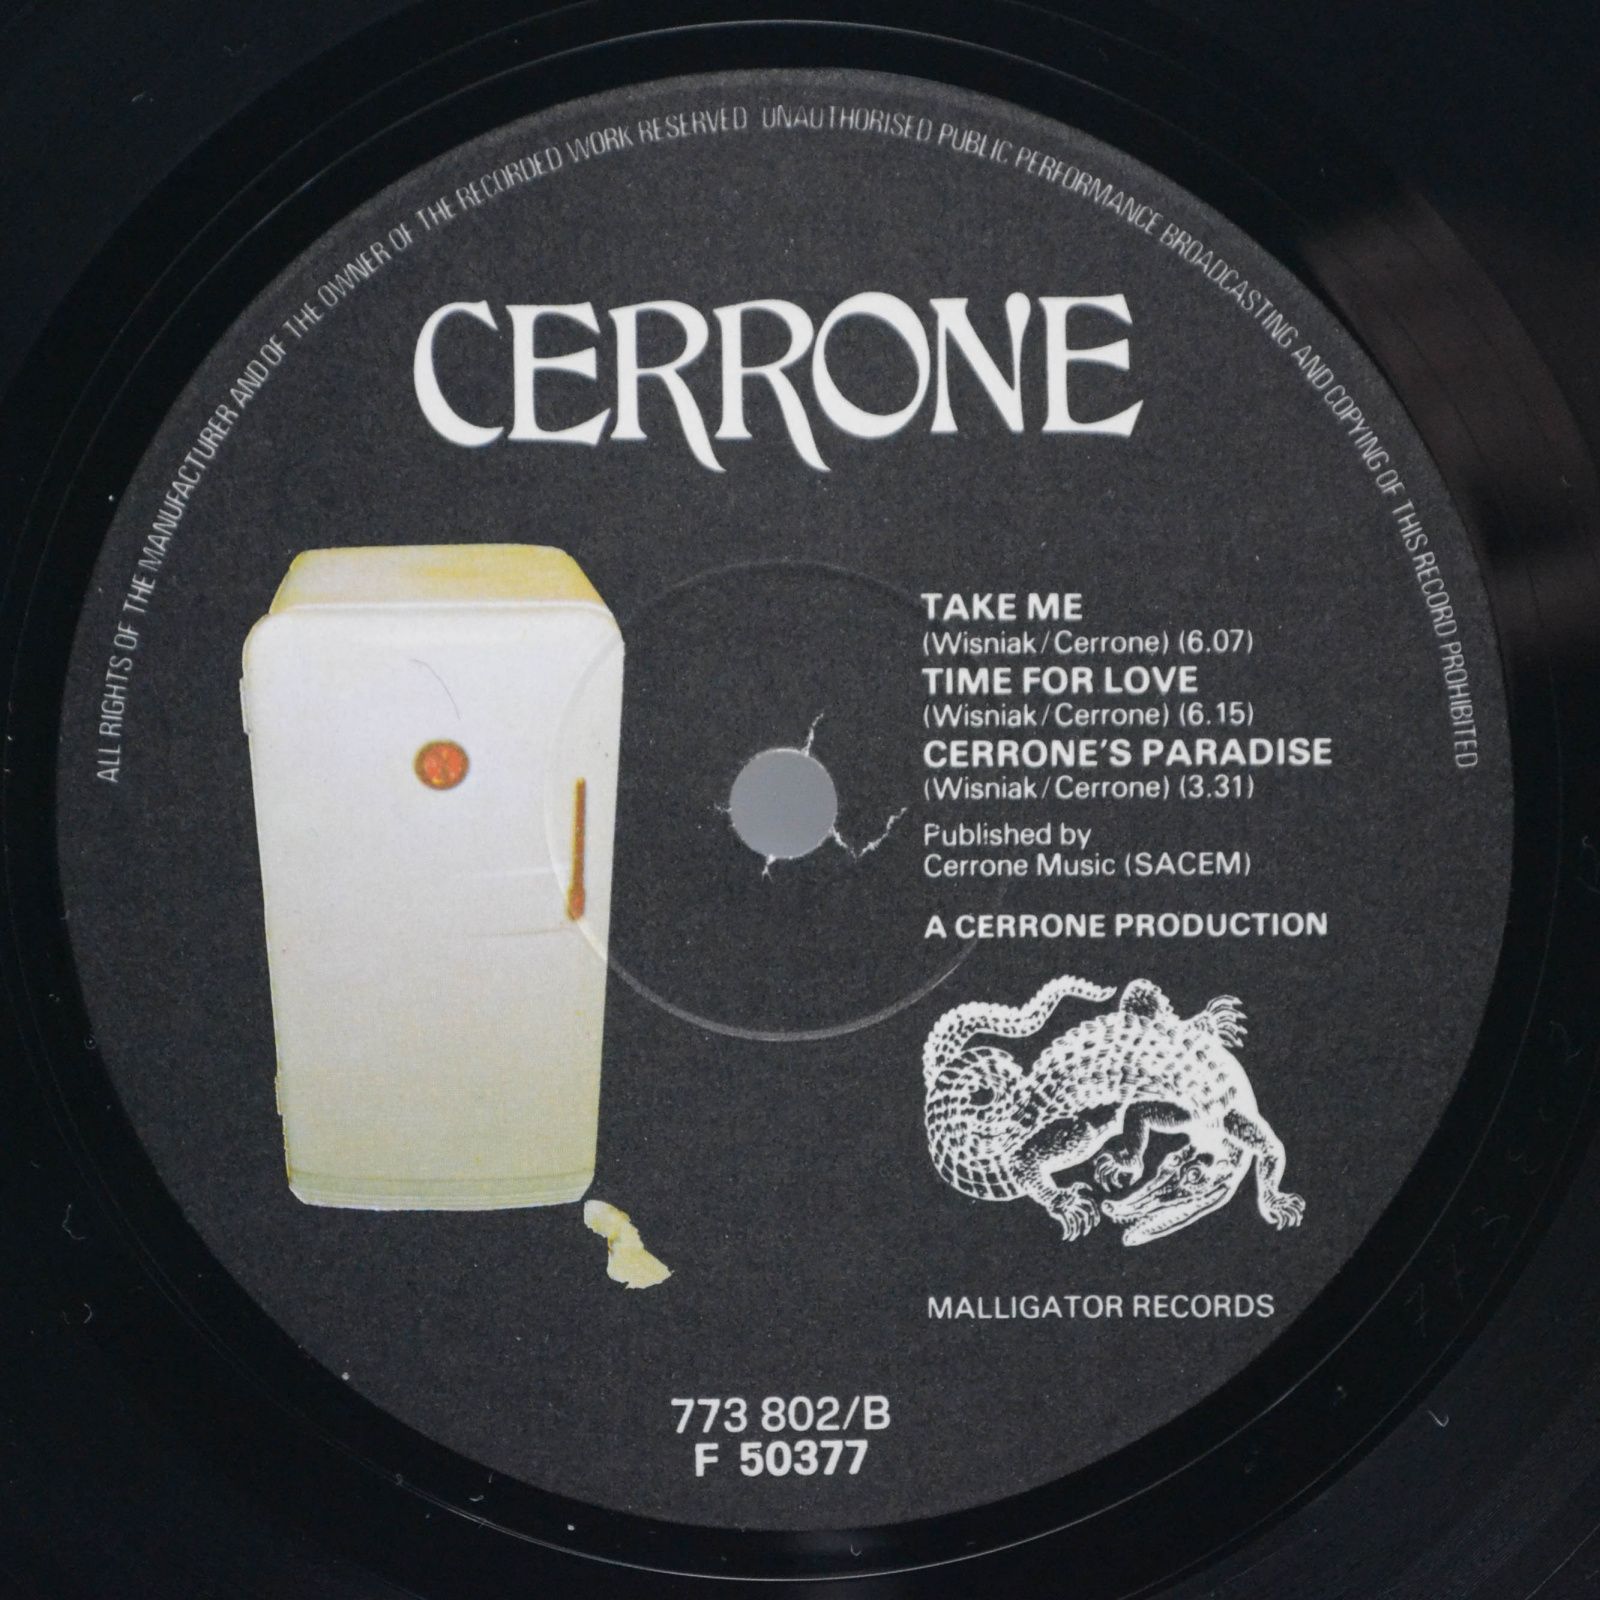 Cerrone — Cerrone's Paradise, 1977